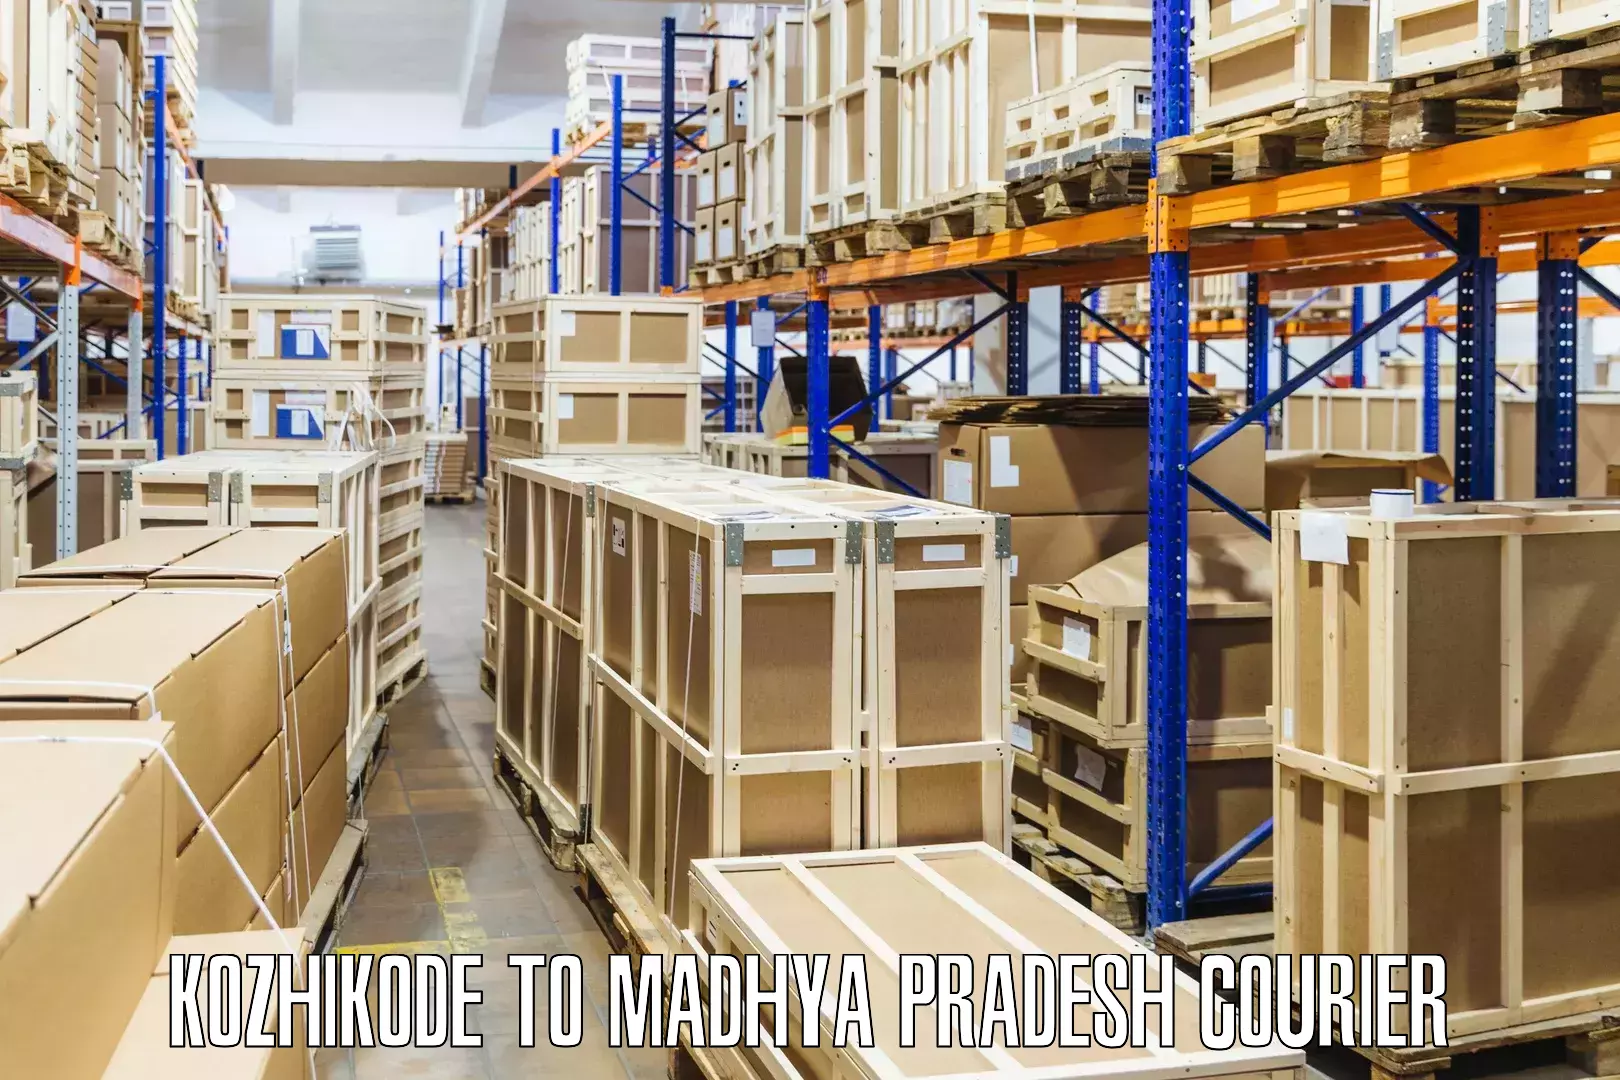 Premium courier solutions Kozhikode to Madhya Pradesh